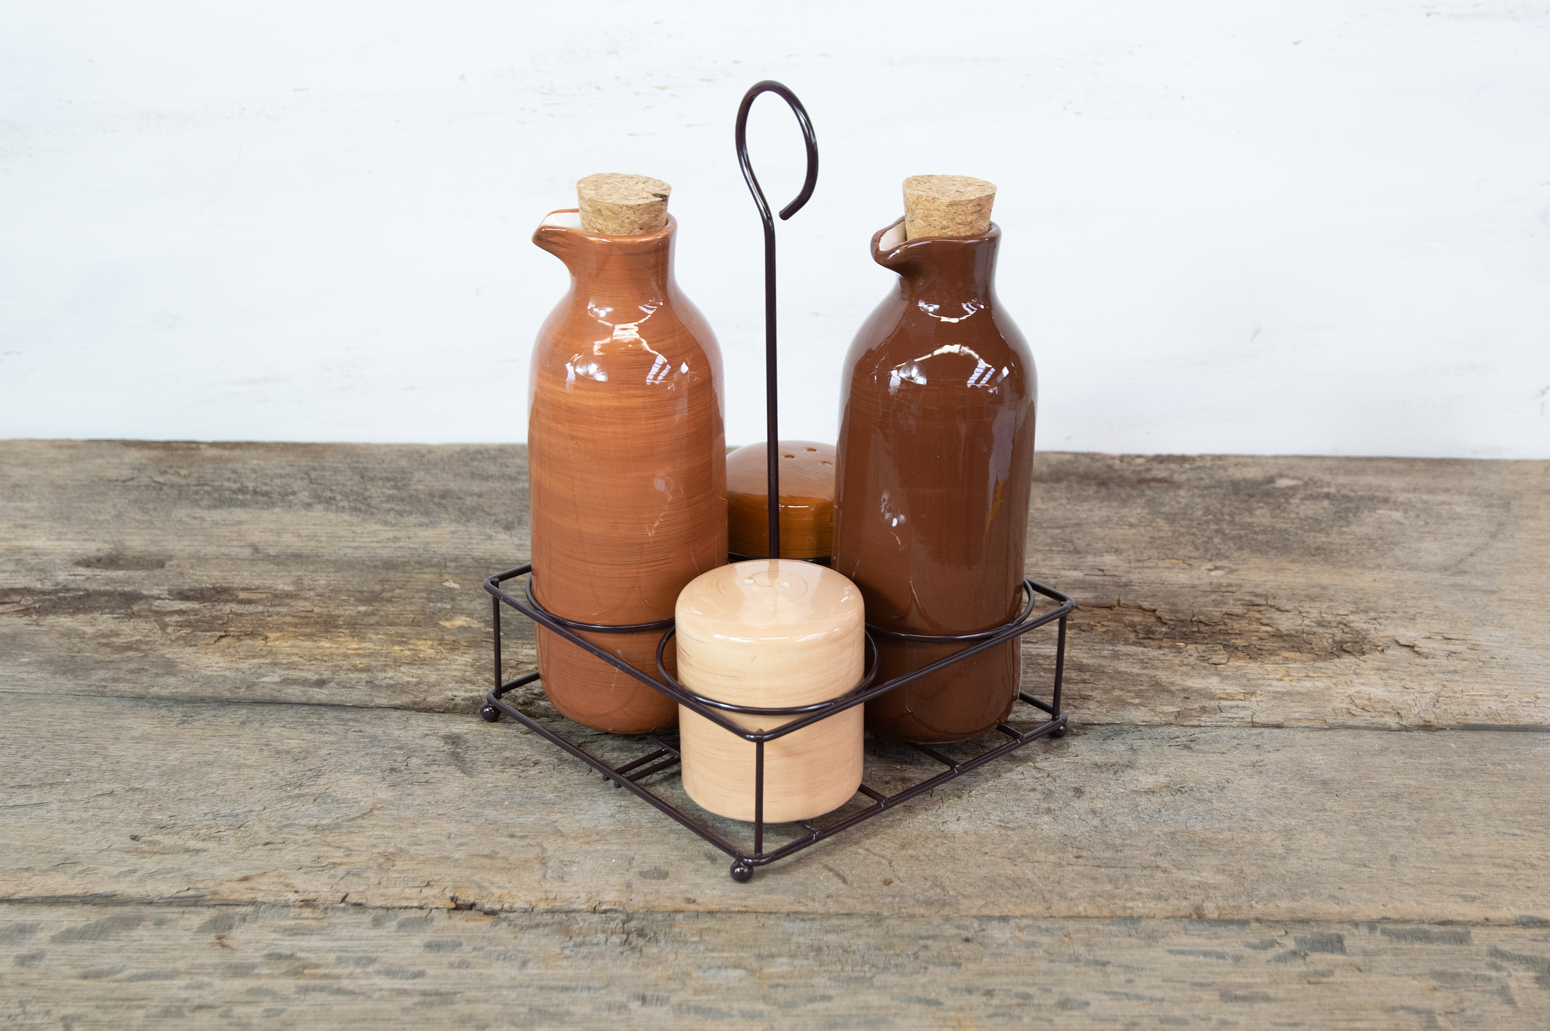 Essig- Öl- Pfeffer- und Salz Menage Keramik im braunen Metallständer Landhausstil